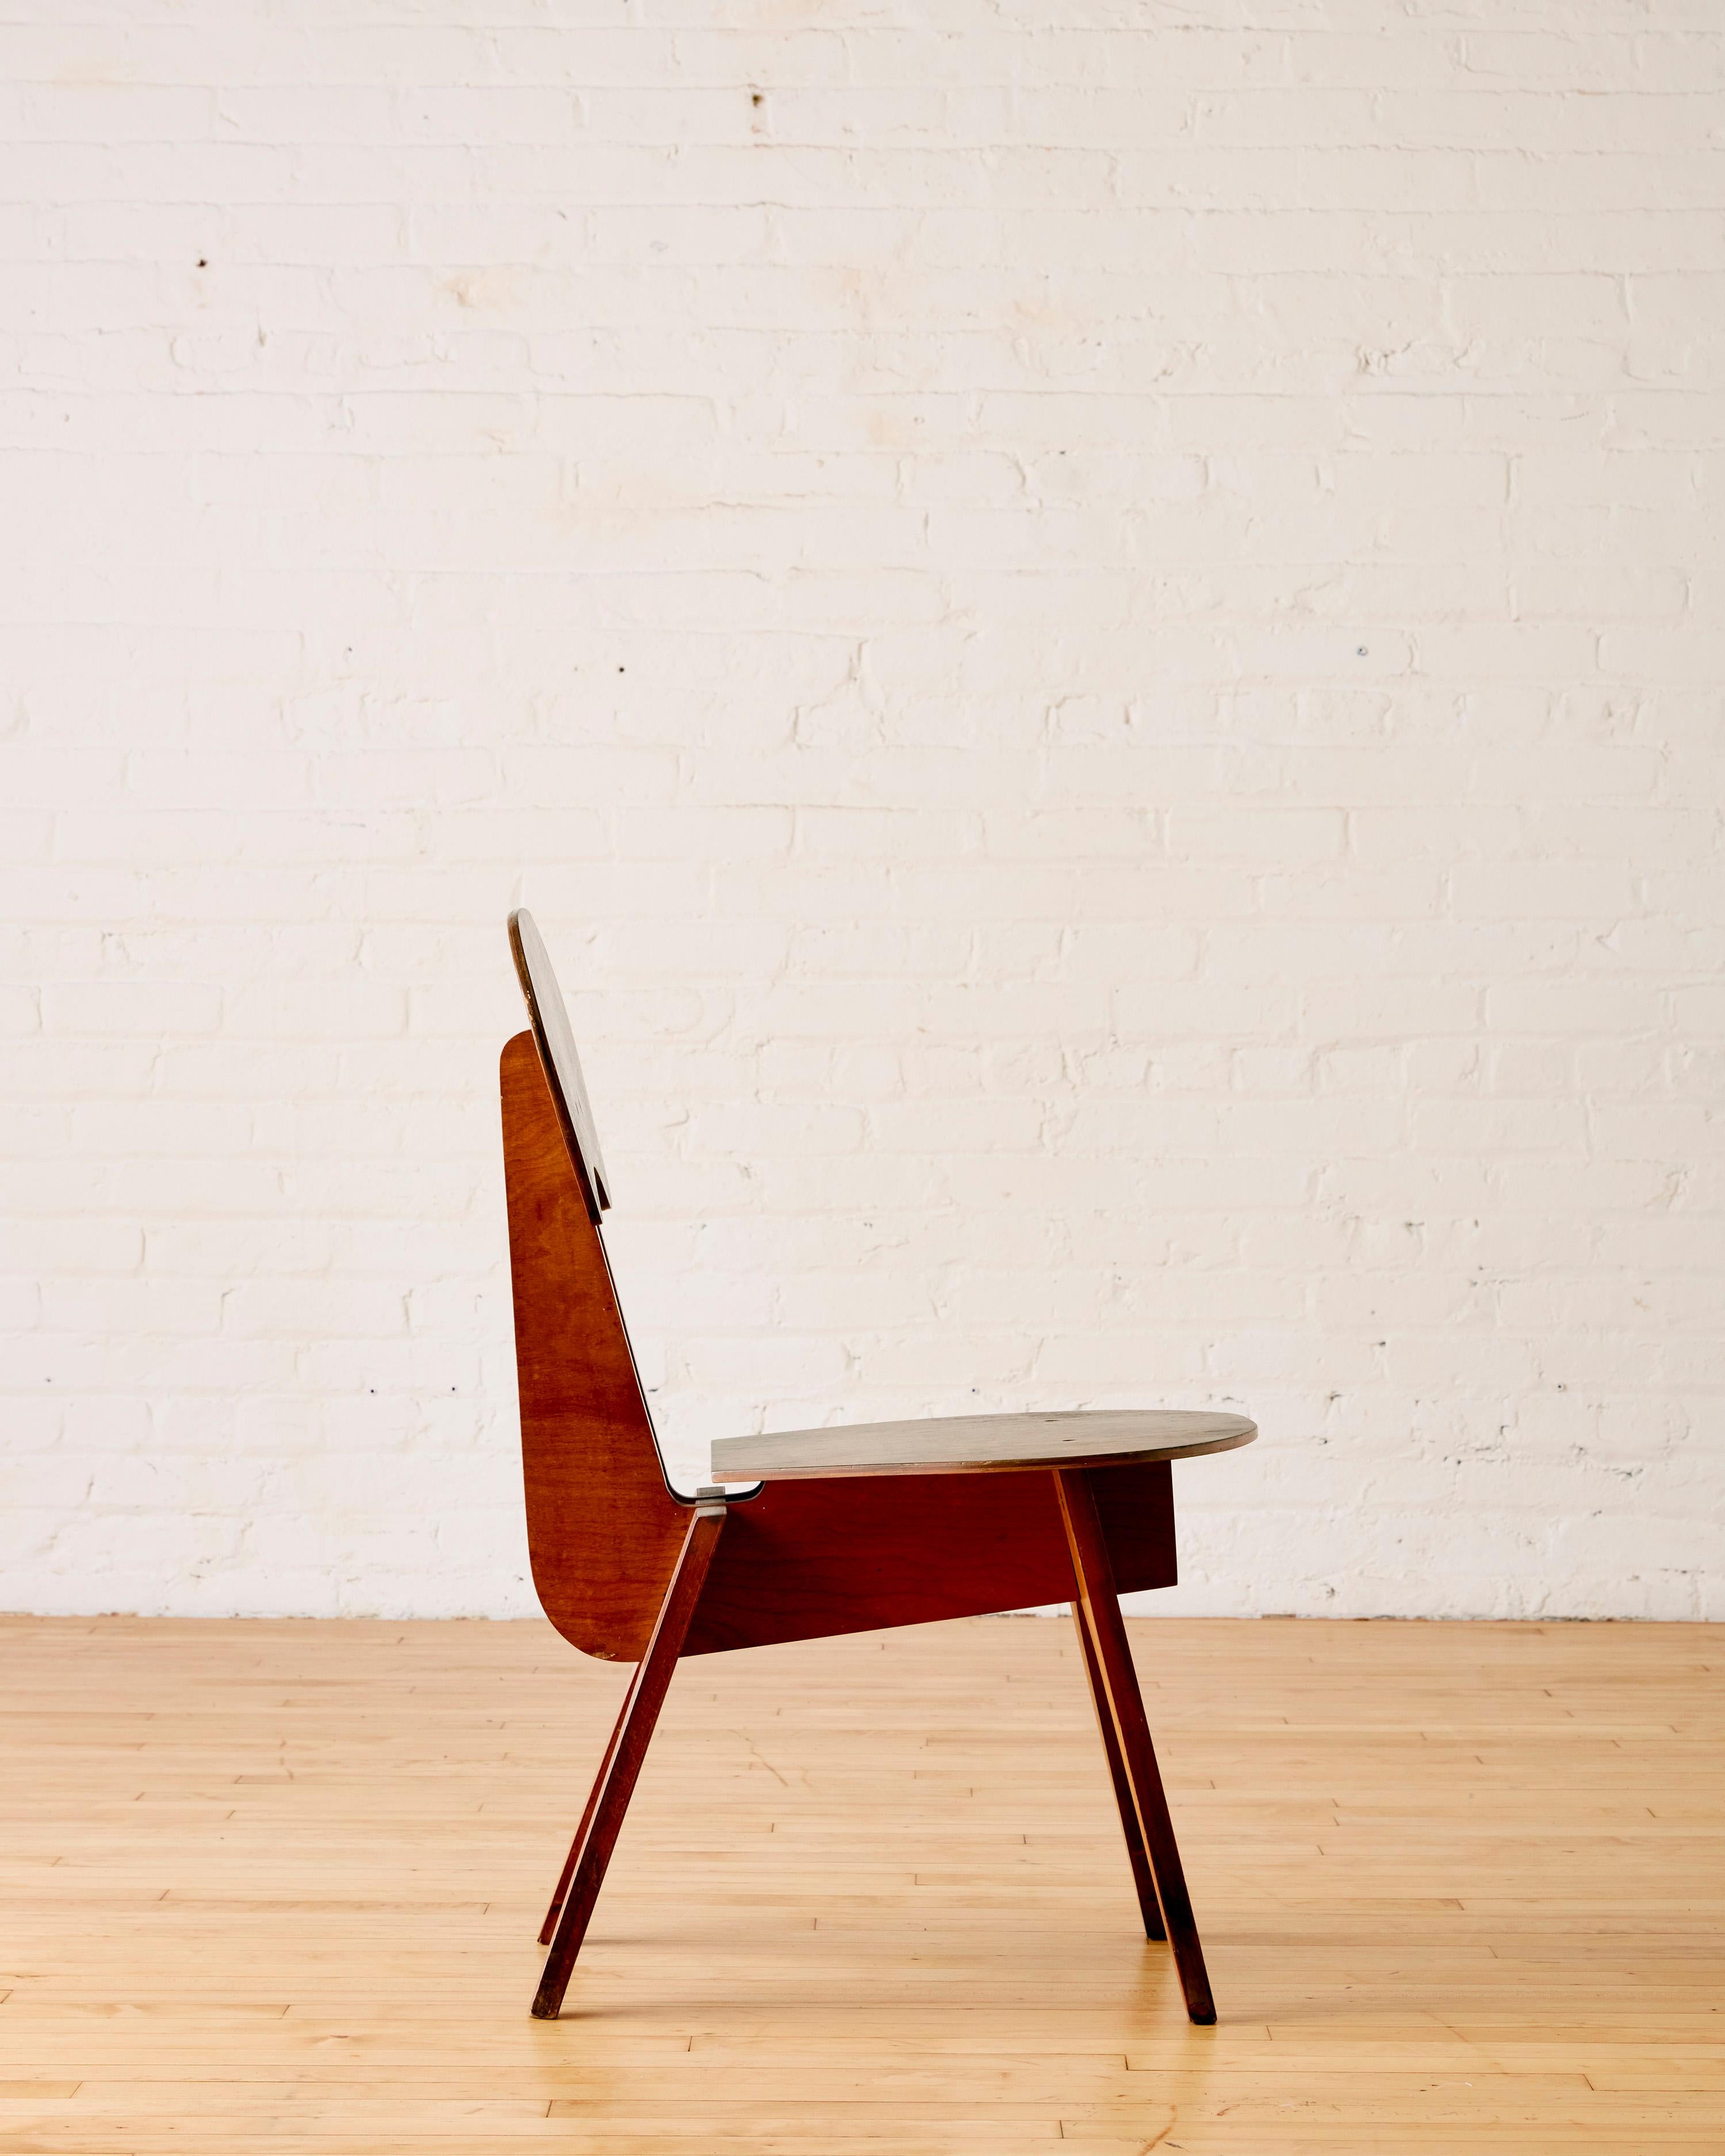 Rare prototype de chaise en contreplaqué circa 1960's conçu par un étudiant inconnu de l'école de design de Chicago, le New Bauhaus, fondé par Lazlo Moholy-Nagy en 1937. Le design a été influencé par Marcel Breuer et Noguchi.

Livré avec un livre